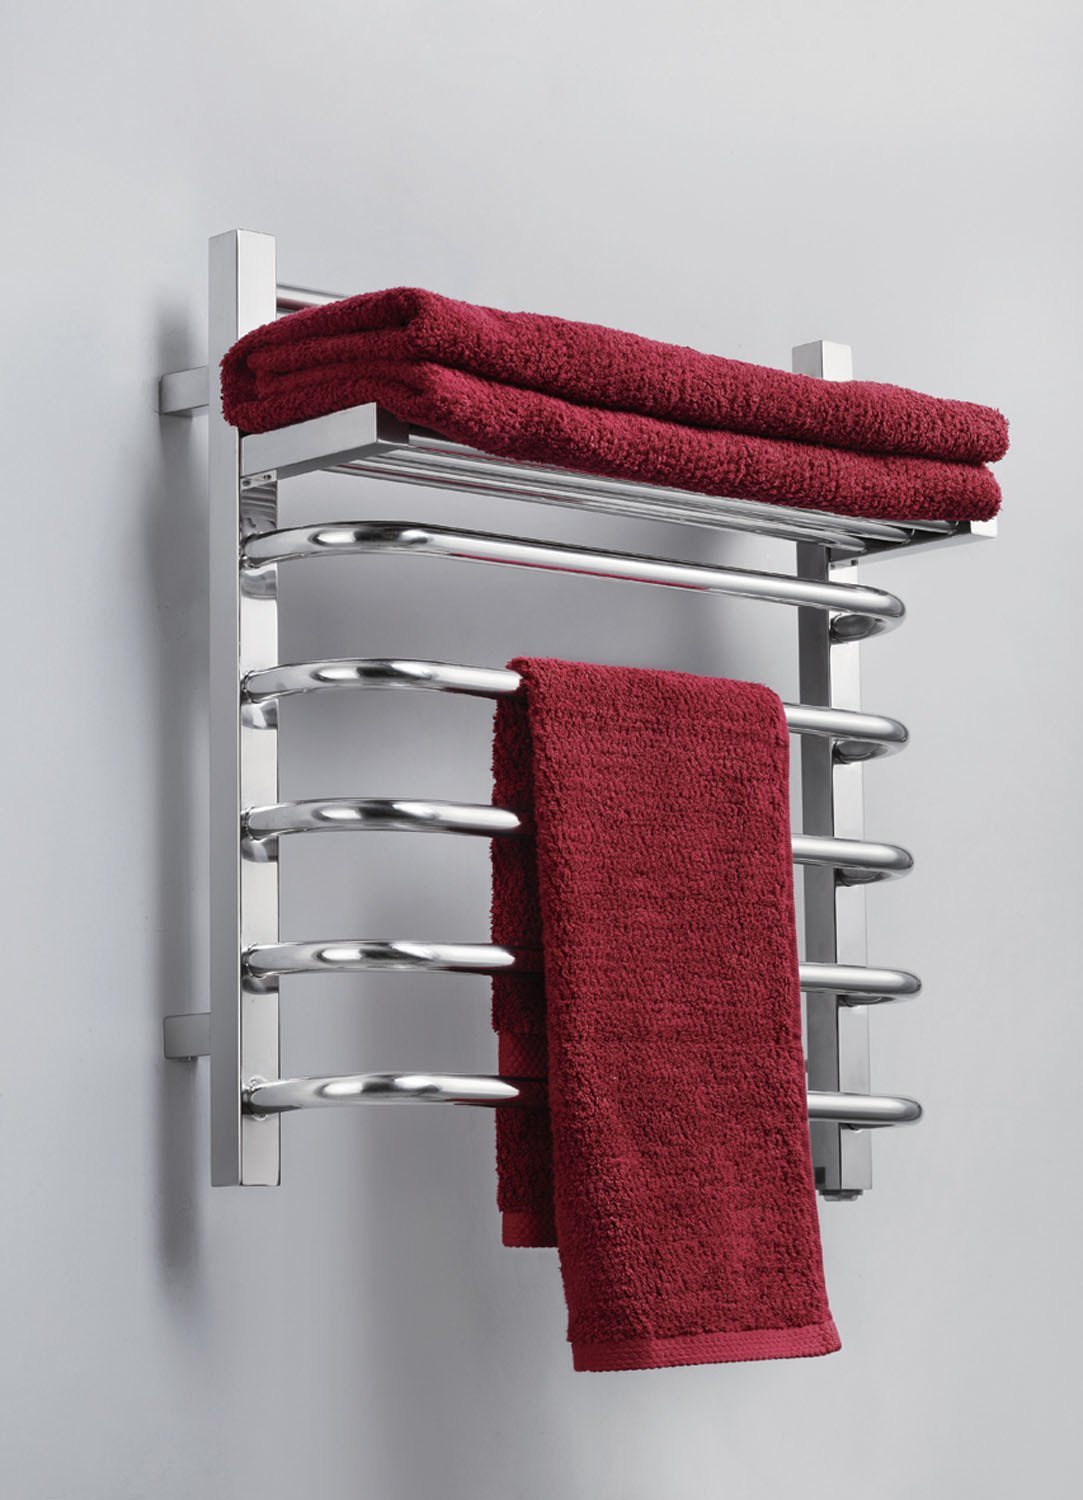 Virtu USA Koze 118 Wall Mounted Electric Towel Warmer in Polished Chrome Towel Warmers Virtu USA 